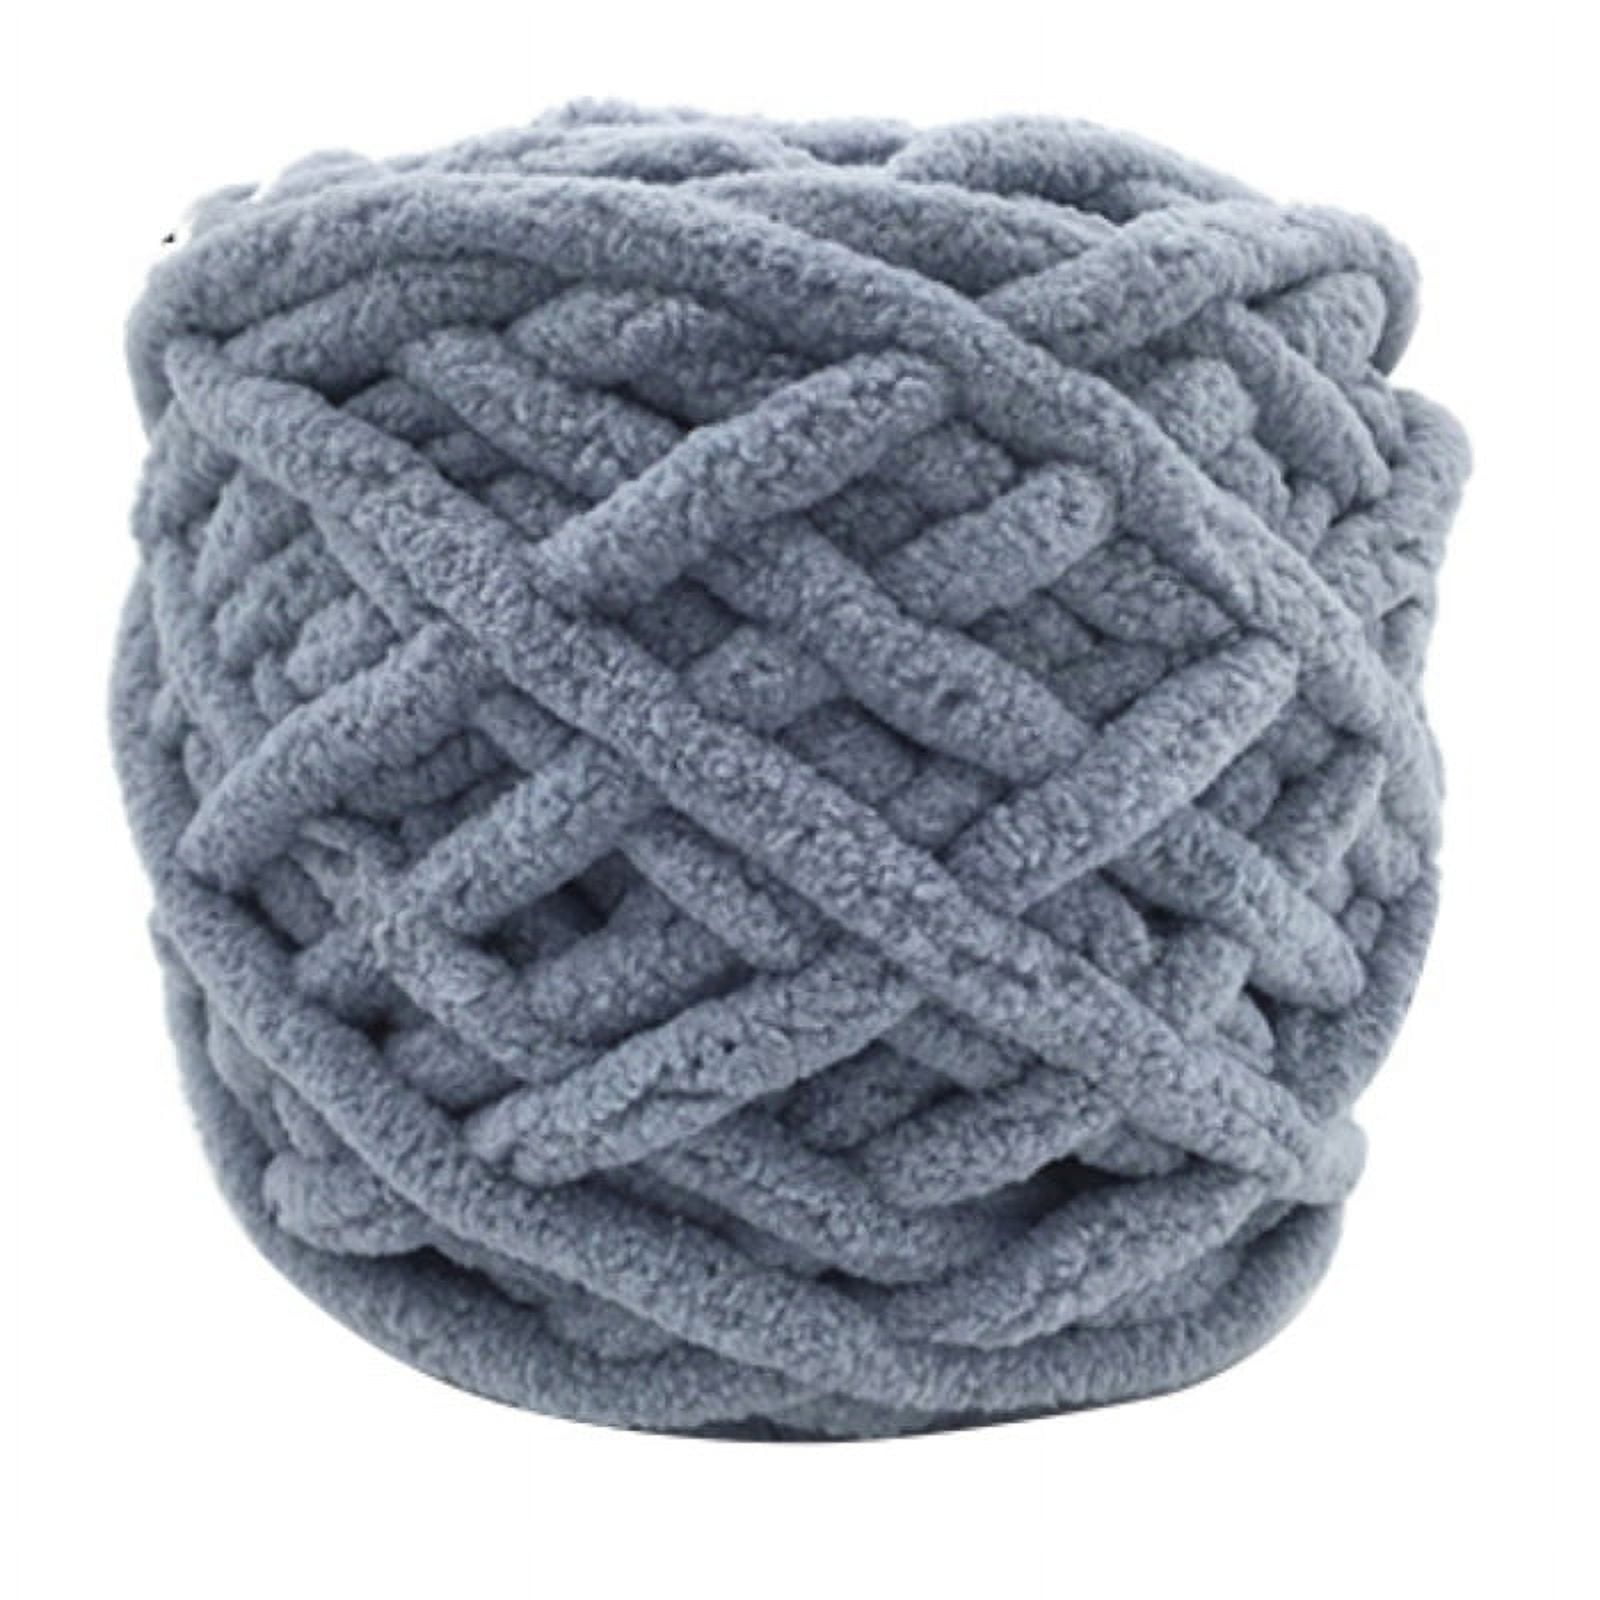 Thick Chunky Yarn, Chunky Wool Yarn, Soft Polyester Yarn, Arm